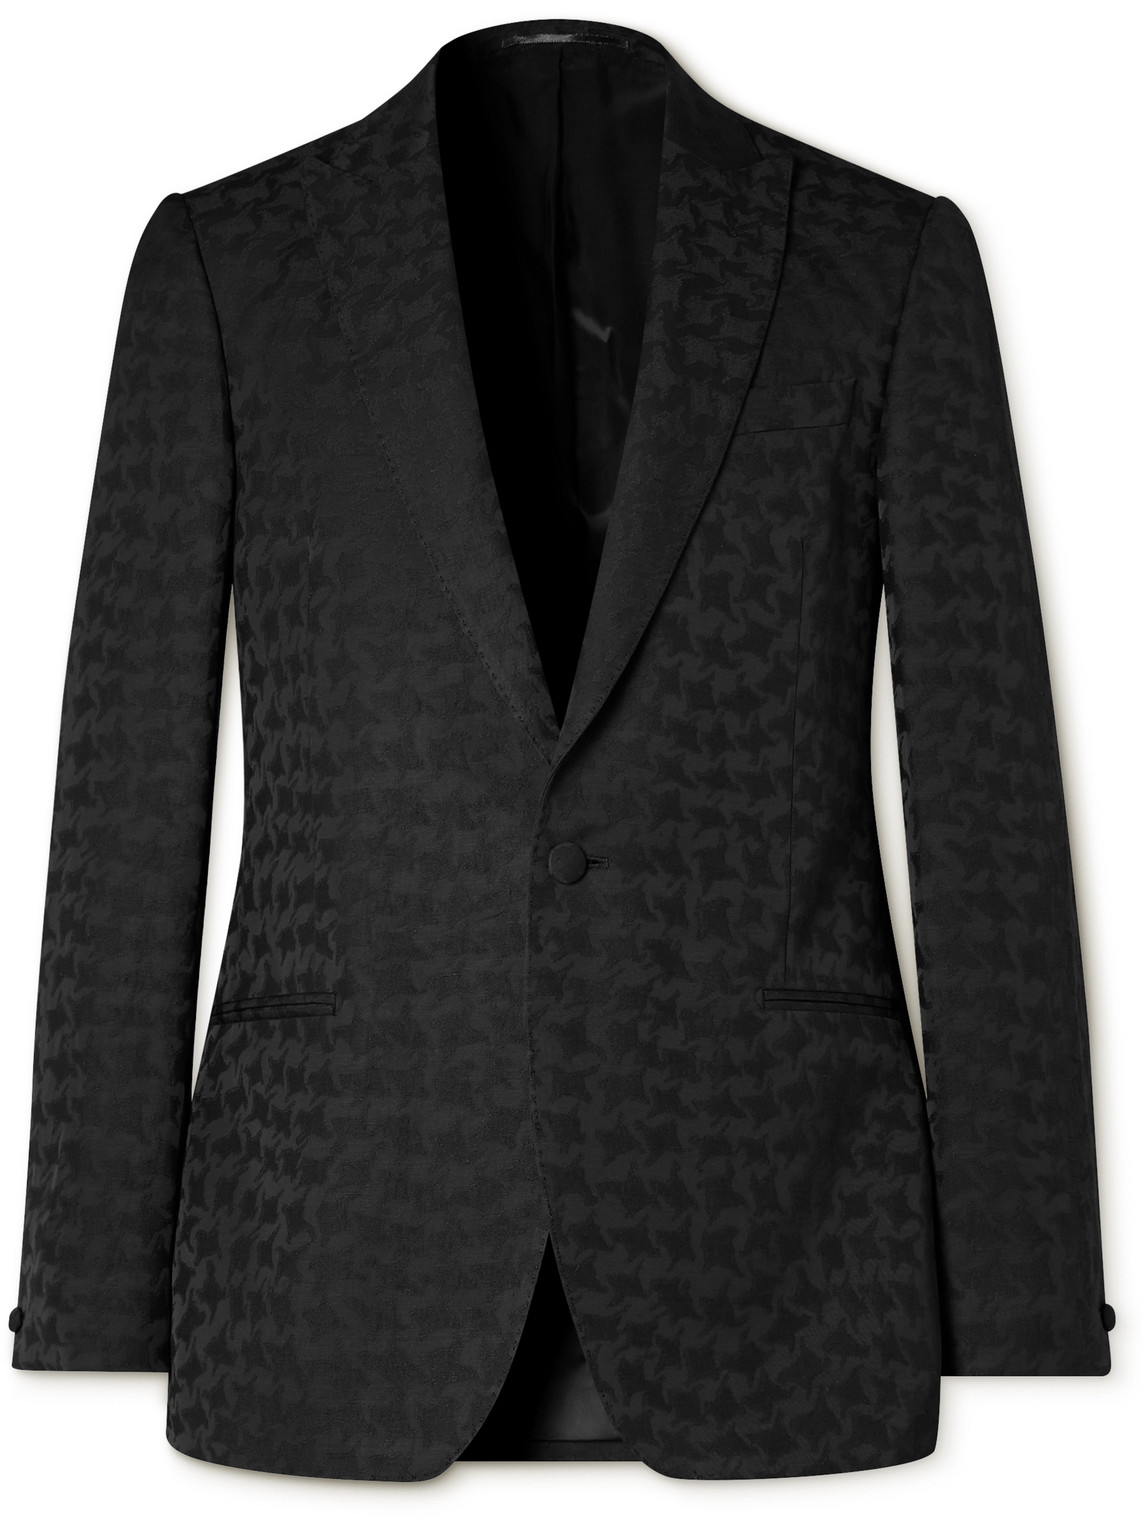 Mr P Houndstooth Jacquard Blazer In Black